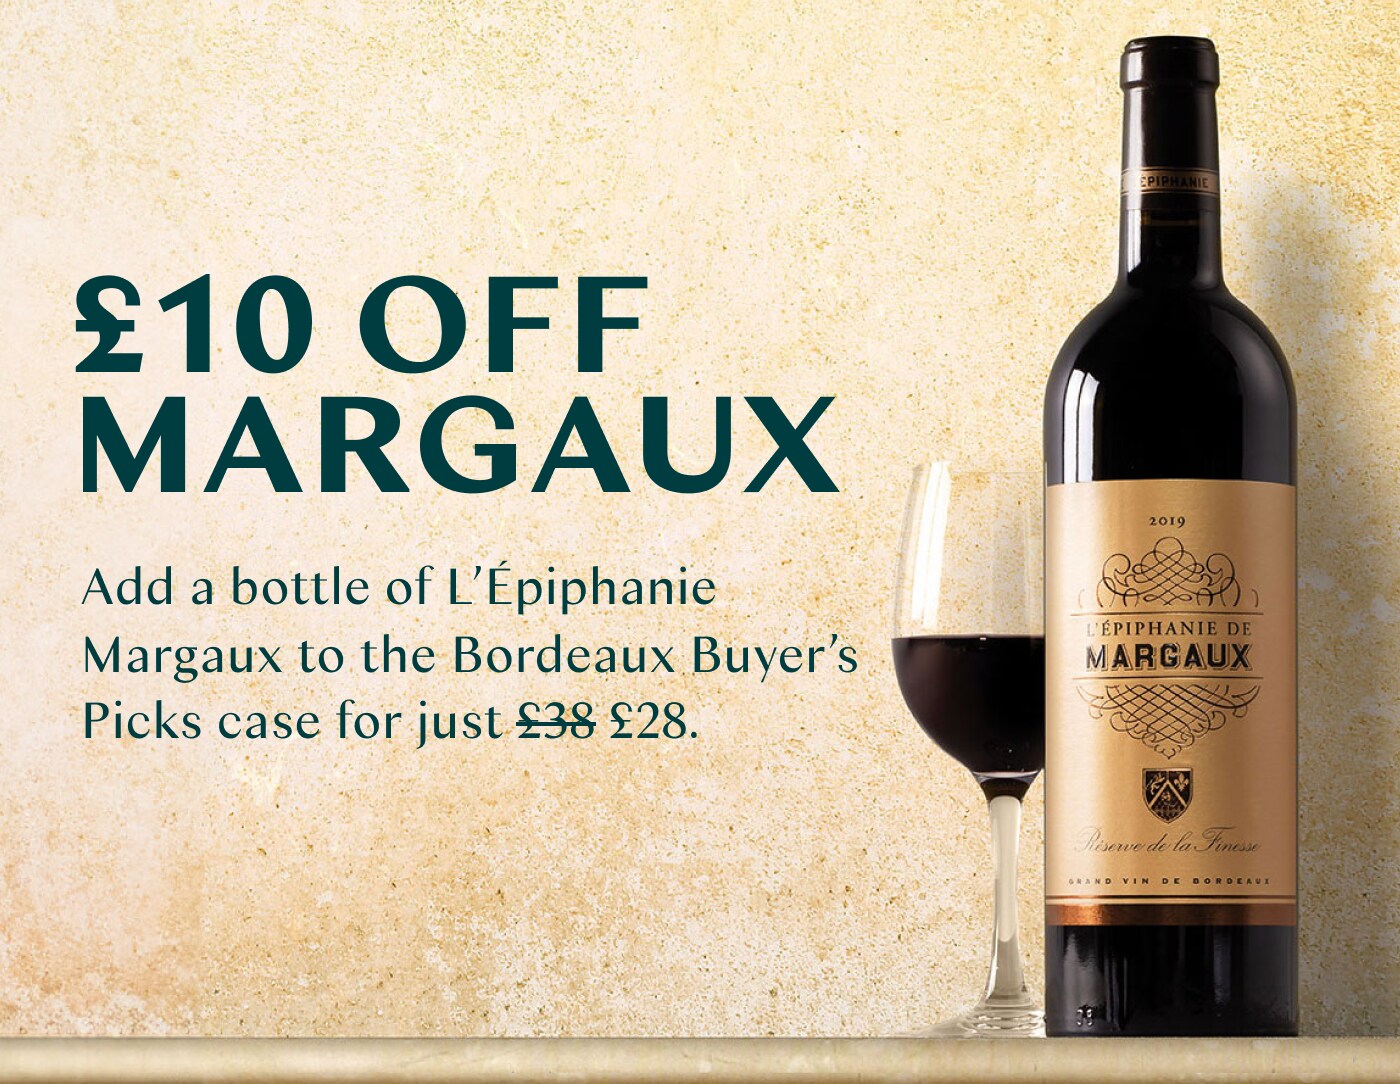 Epiphanie de Margaux add-on deal